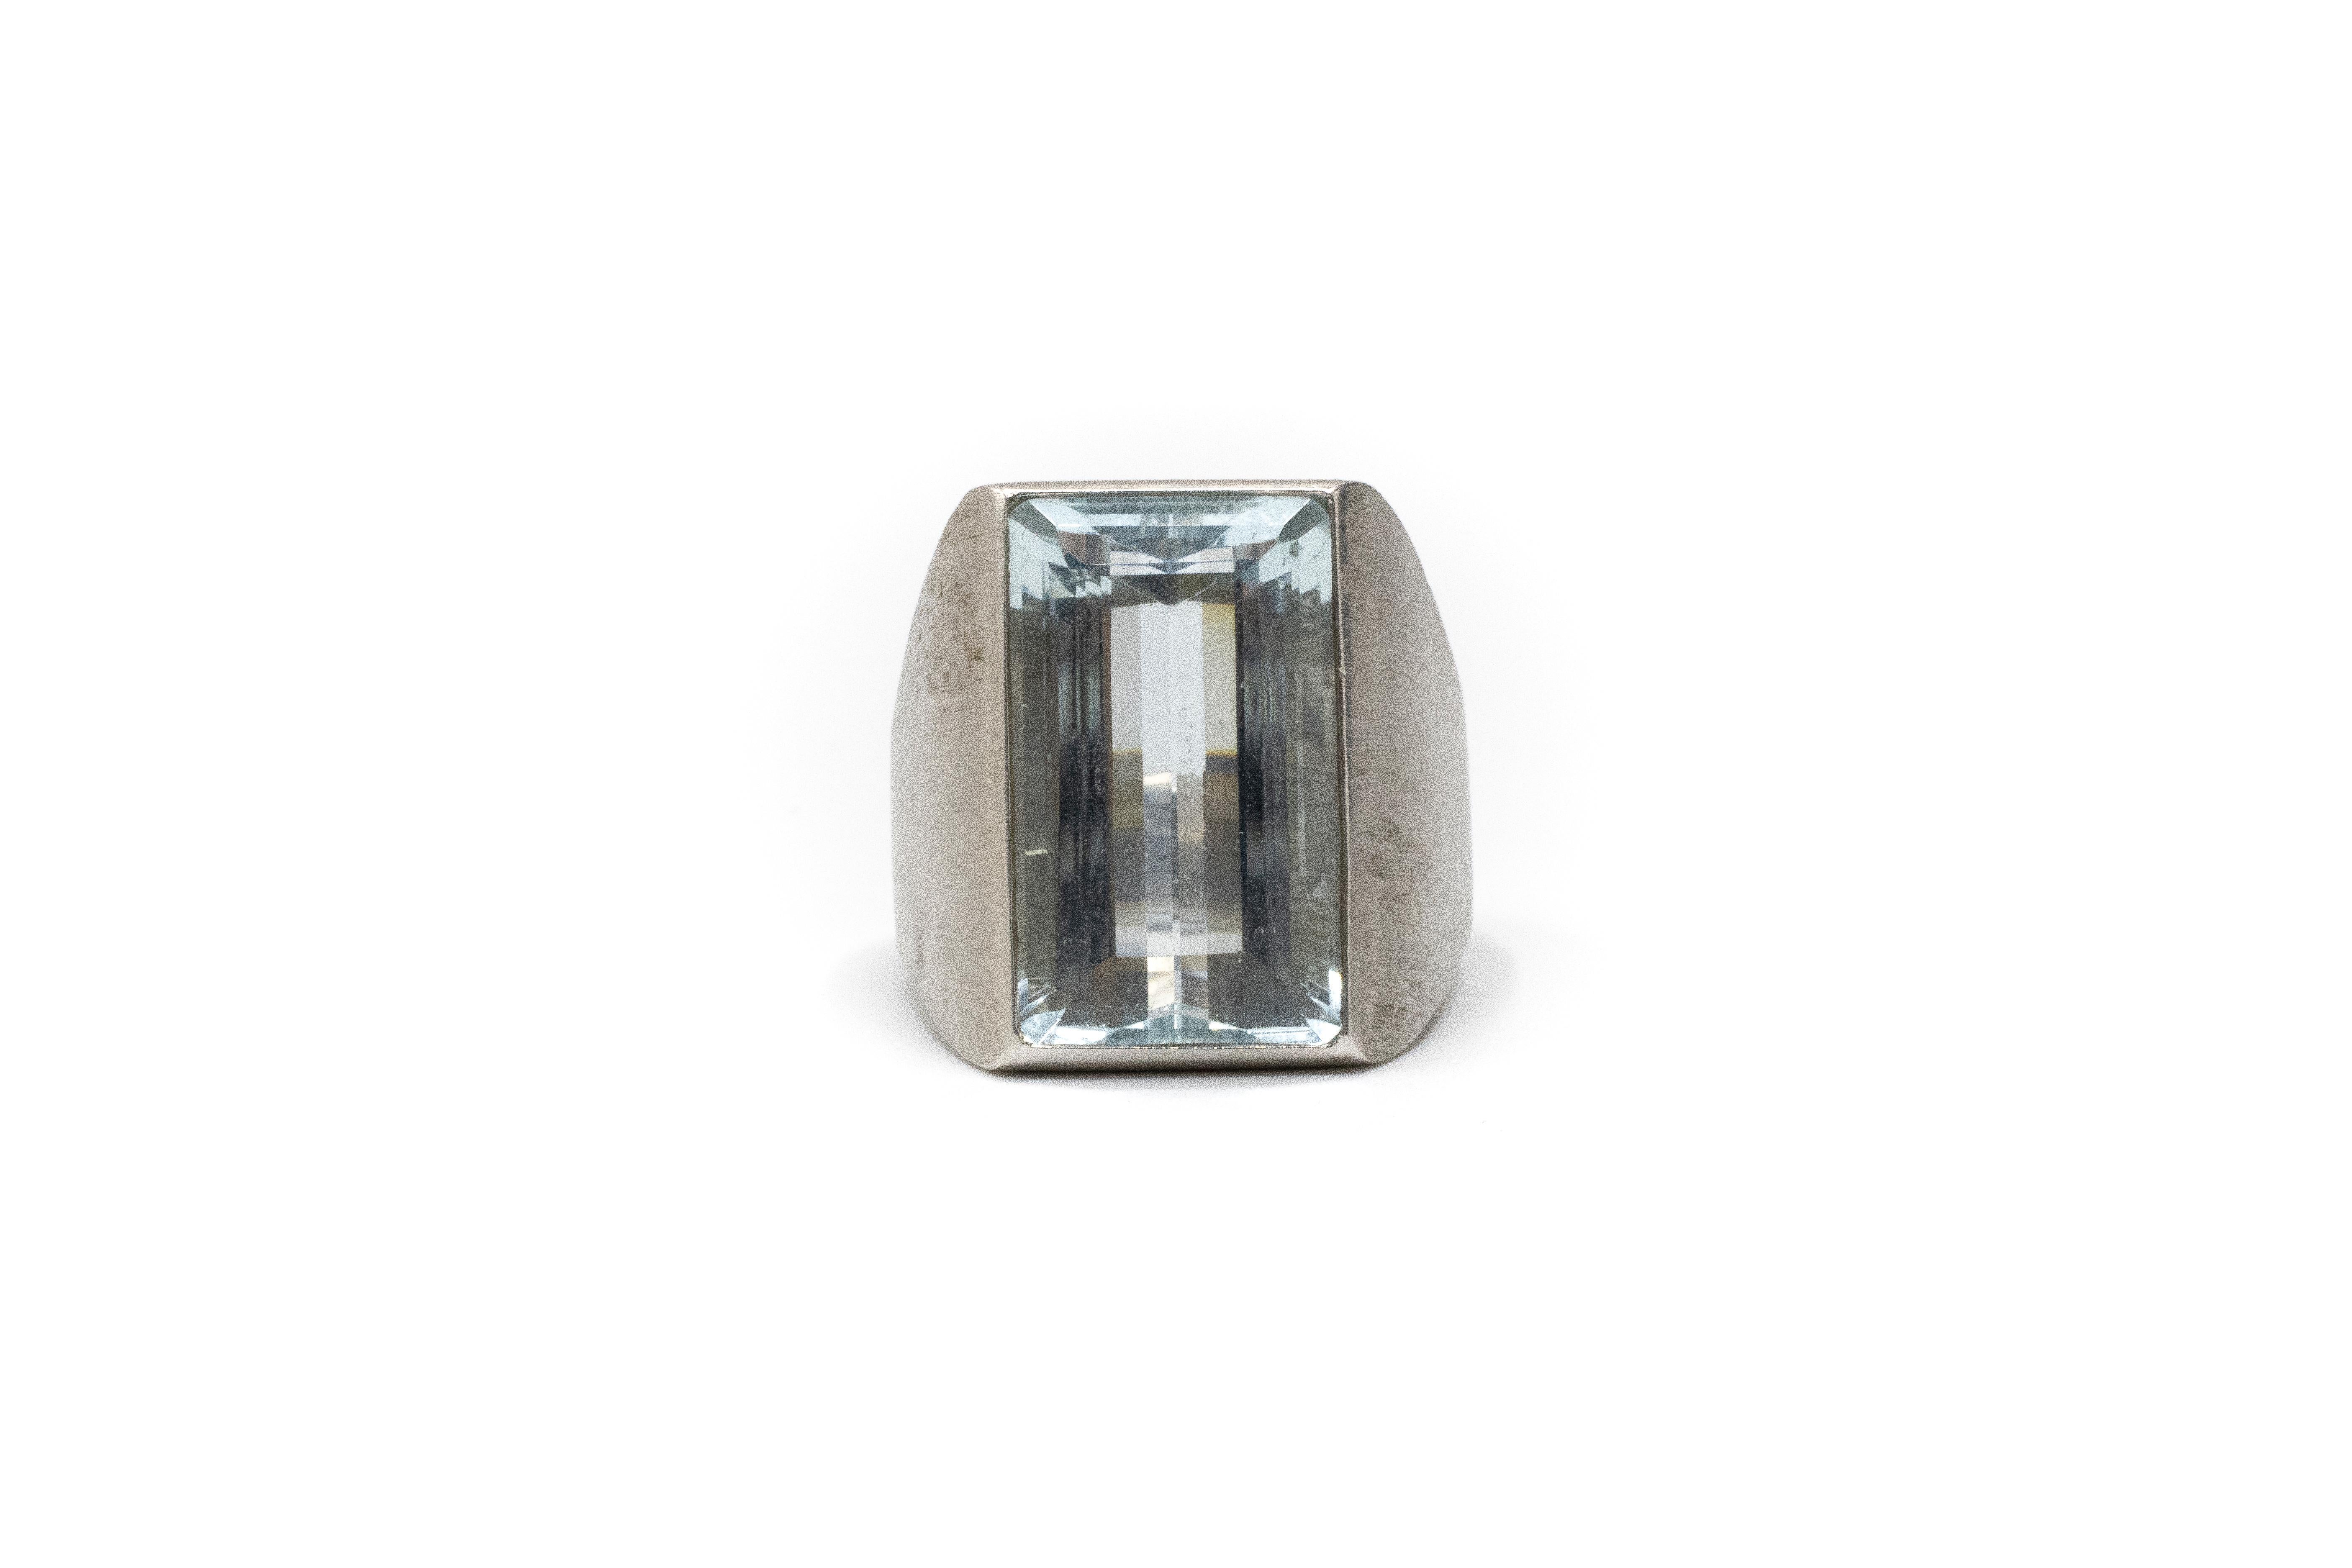 Aquamarine Vintage 14k Brushed White Gold Ring. Aquamarine approximately 12 carats. Sz 7.5. Total weight 22.65 grams